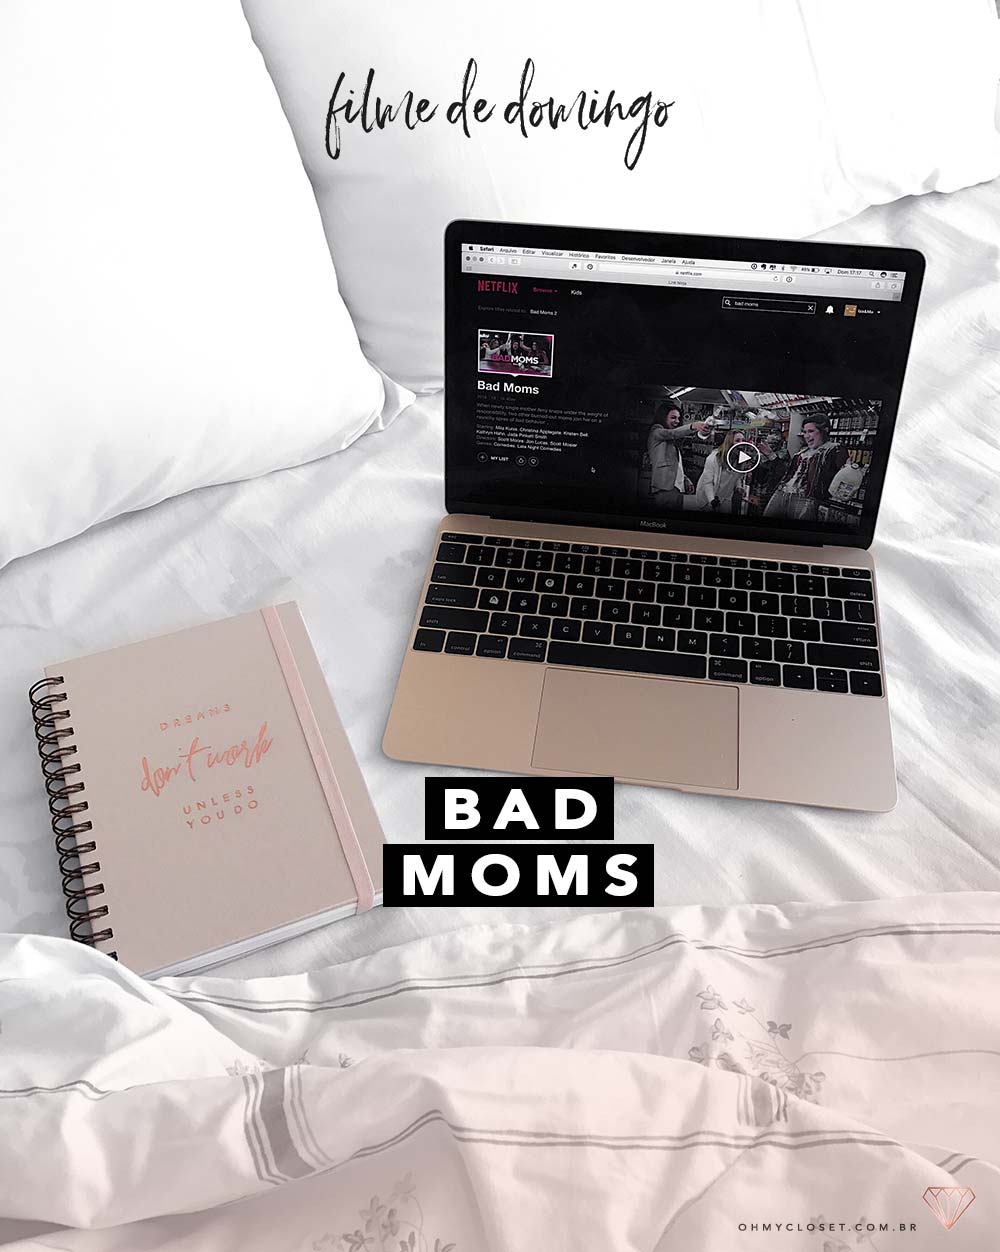 Bad Moms (Perfeita é a Mãe), uma excelente comédia para o final de semana.